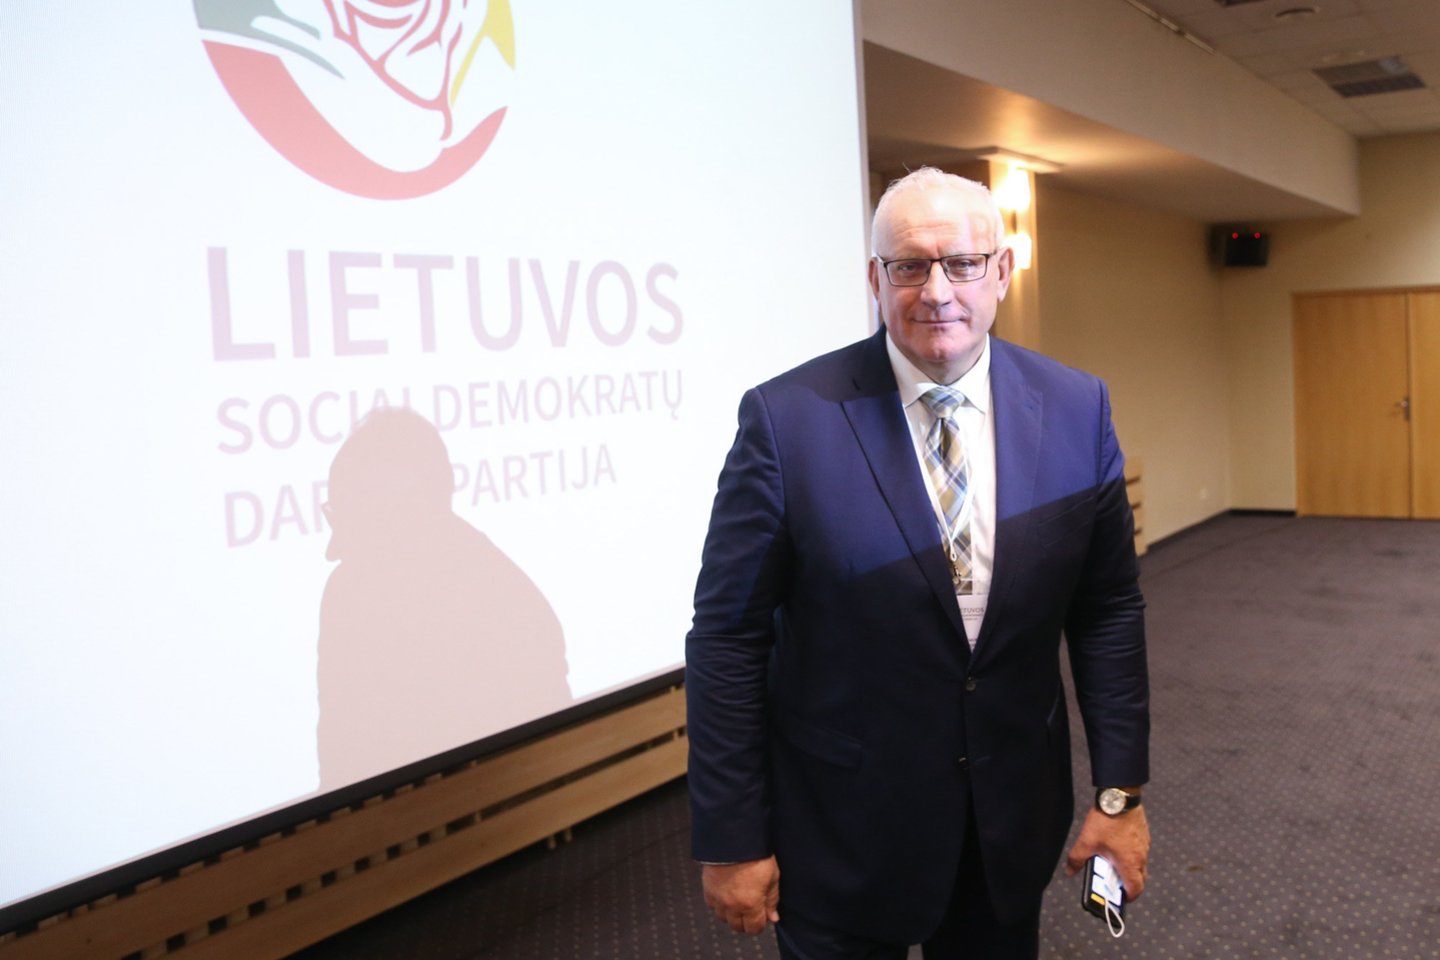 Naujuoju Lietuvos socialdemokratų darbo partijos (LSDDP) pirmininku išrinktas Jonas Pinskus.<br>R.Danisevičiaus nuotr.